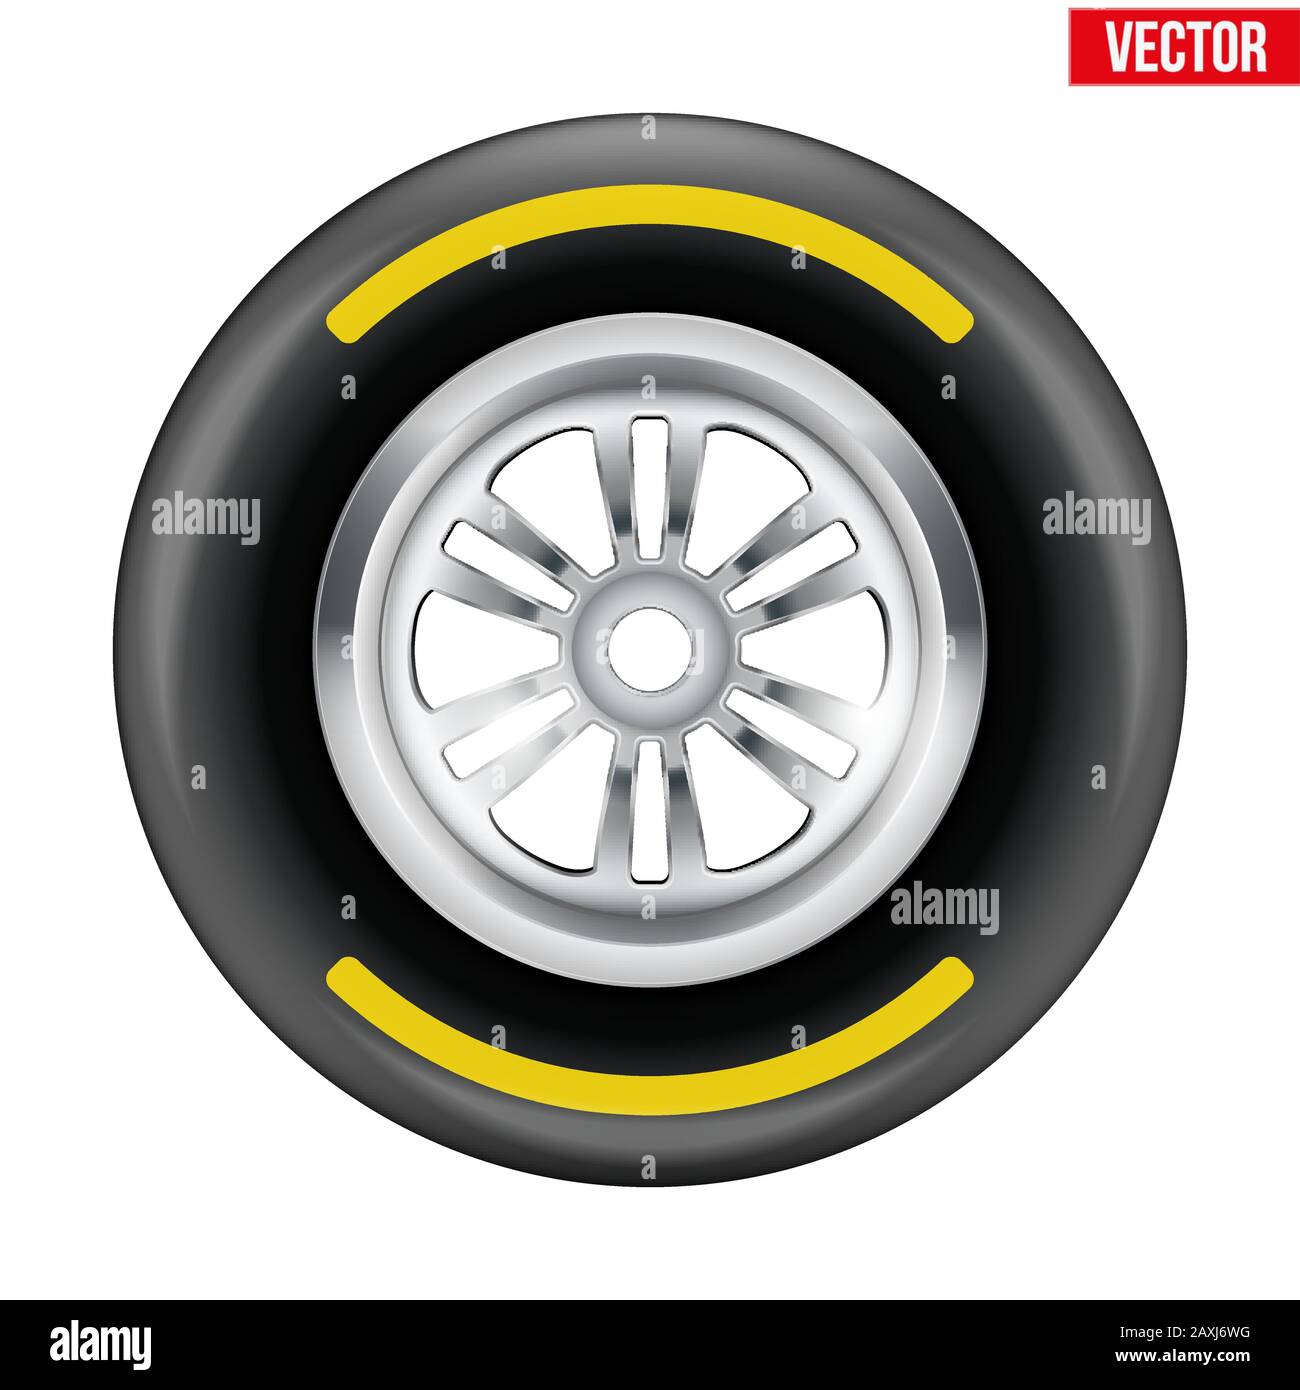 Symbole roue de course et pneu avec bande jaune. Illustration vectorielle isolée sur fond blanc. Illustration de Vecteur